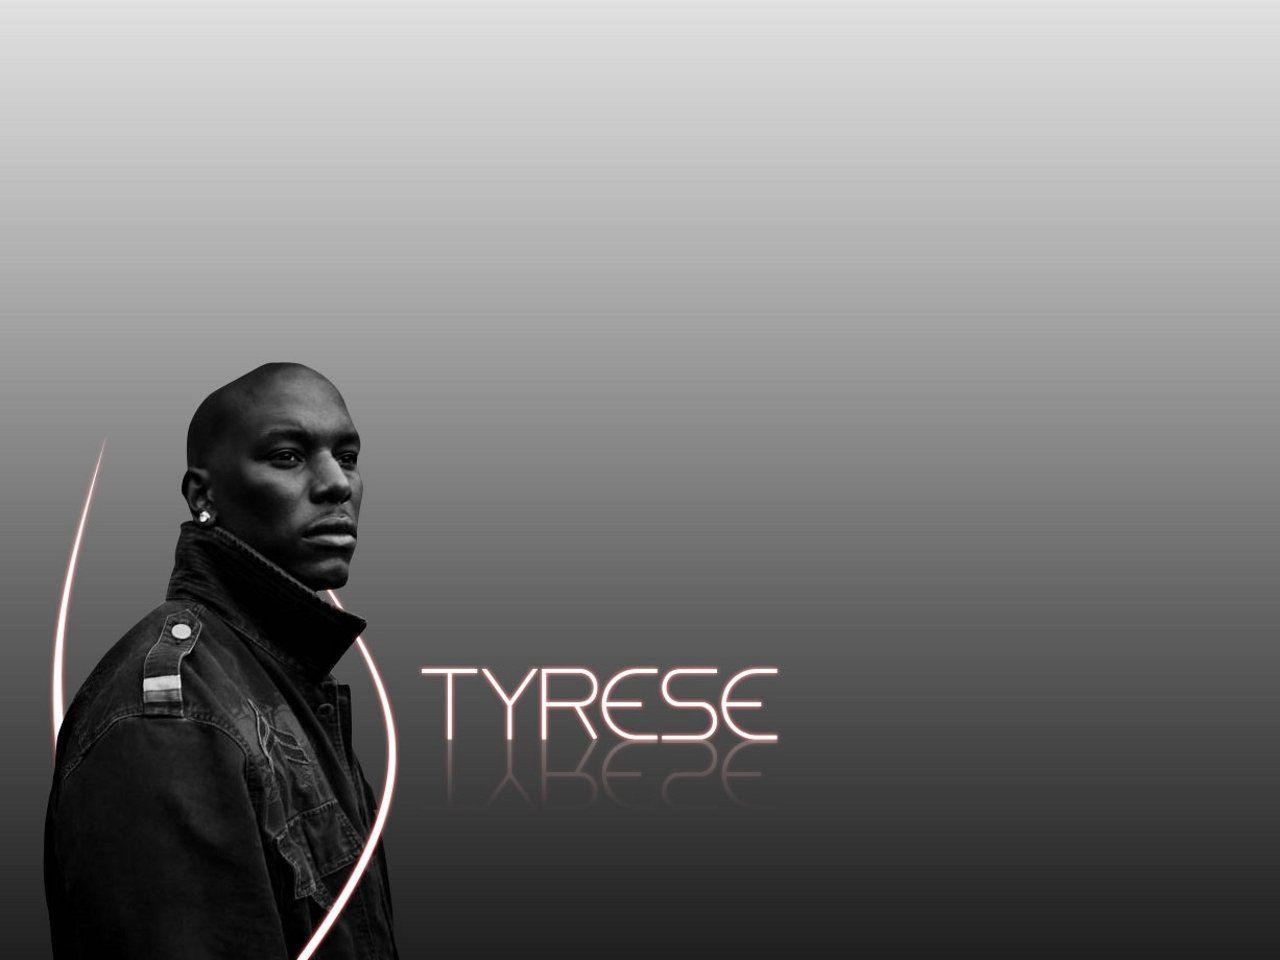 Tyrese signs of love making lyrics